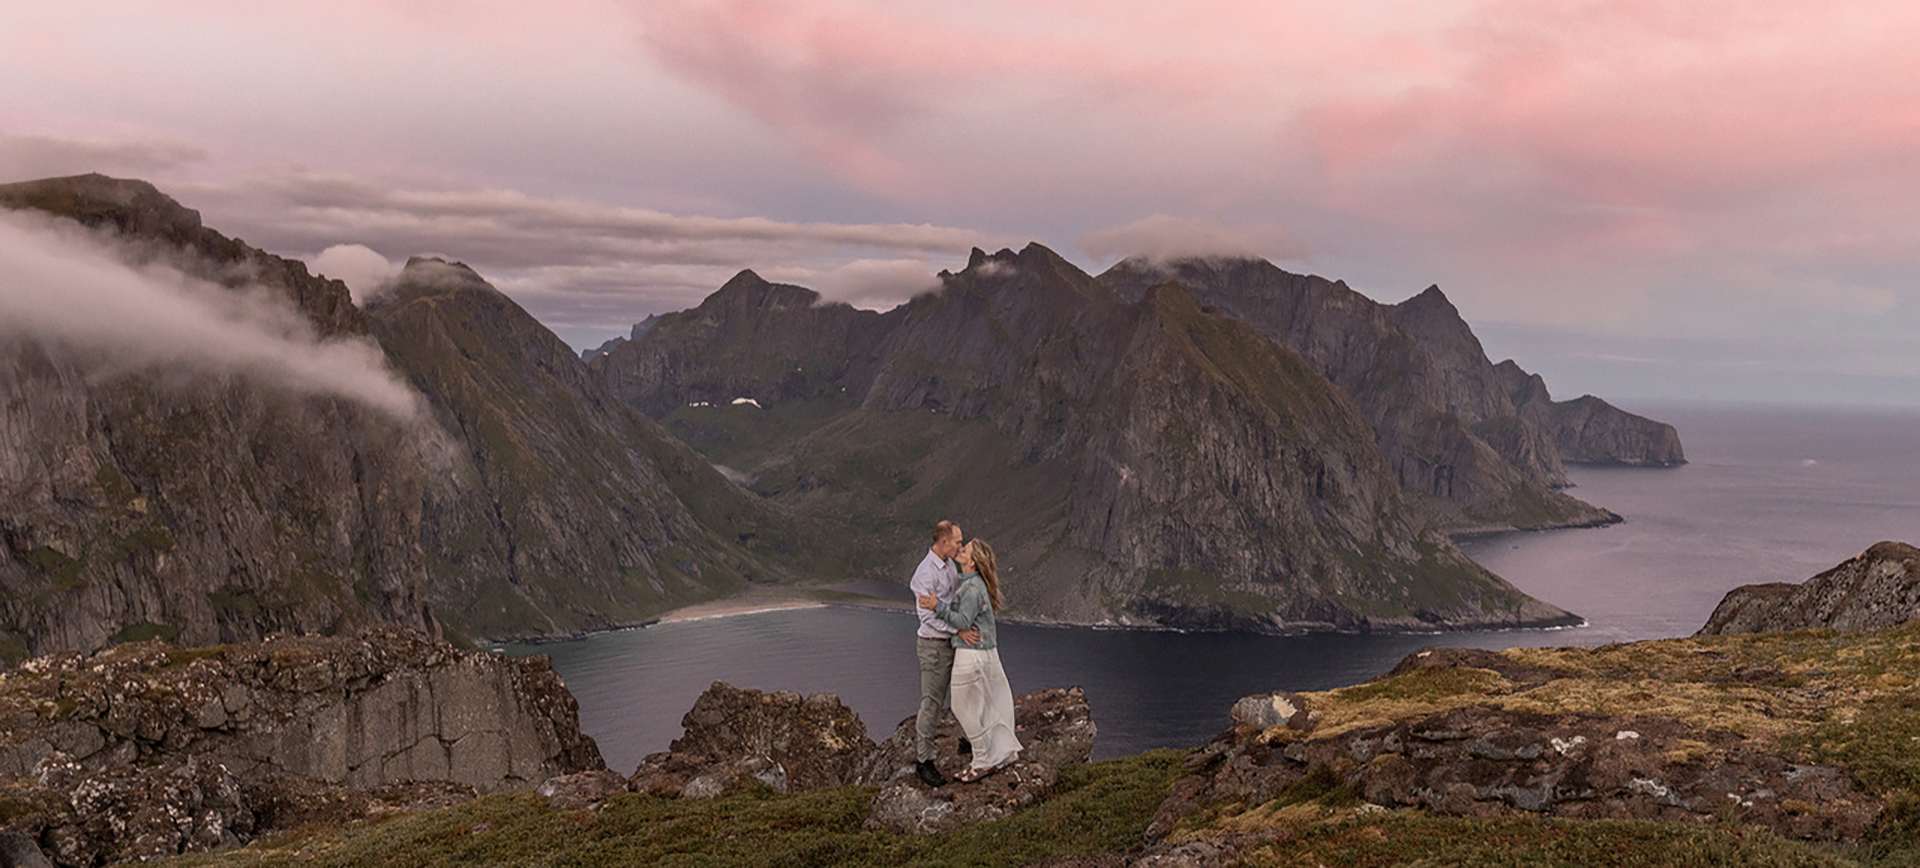 lofoten island elopement wedding in norway, europe